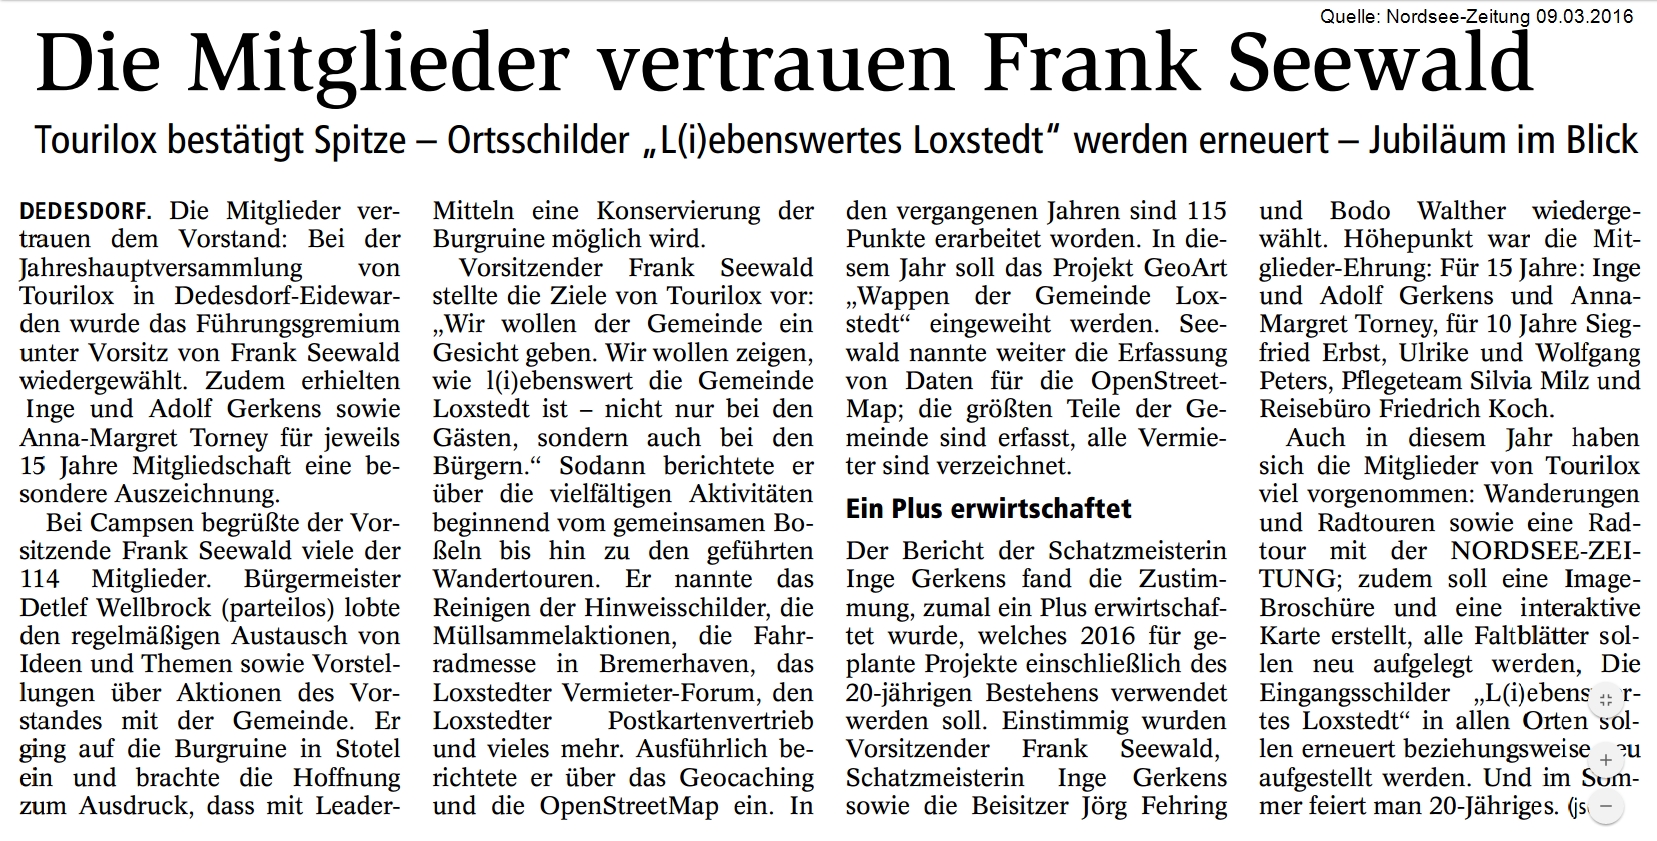 Quelle: Nordsee-Zeitung 9. Mrz. 2016: Die Mitglieder vertrauen Frank Seewald